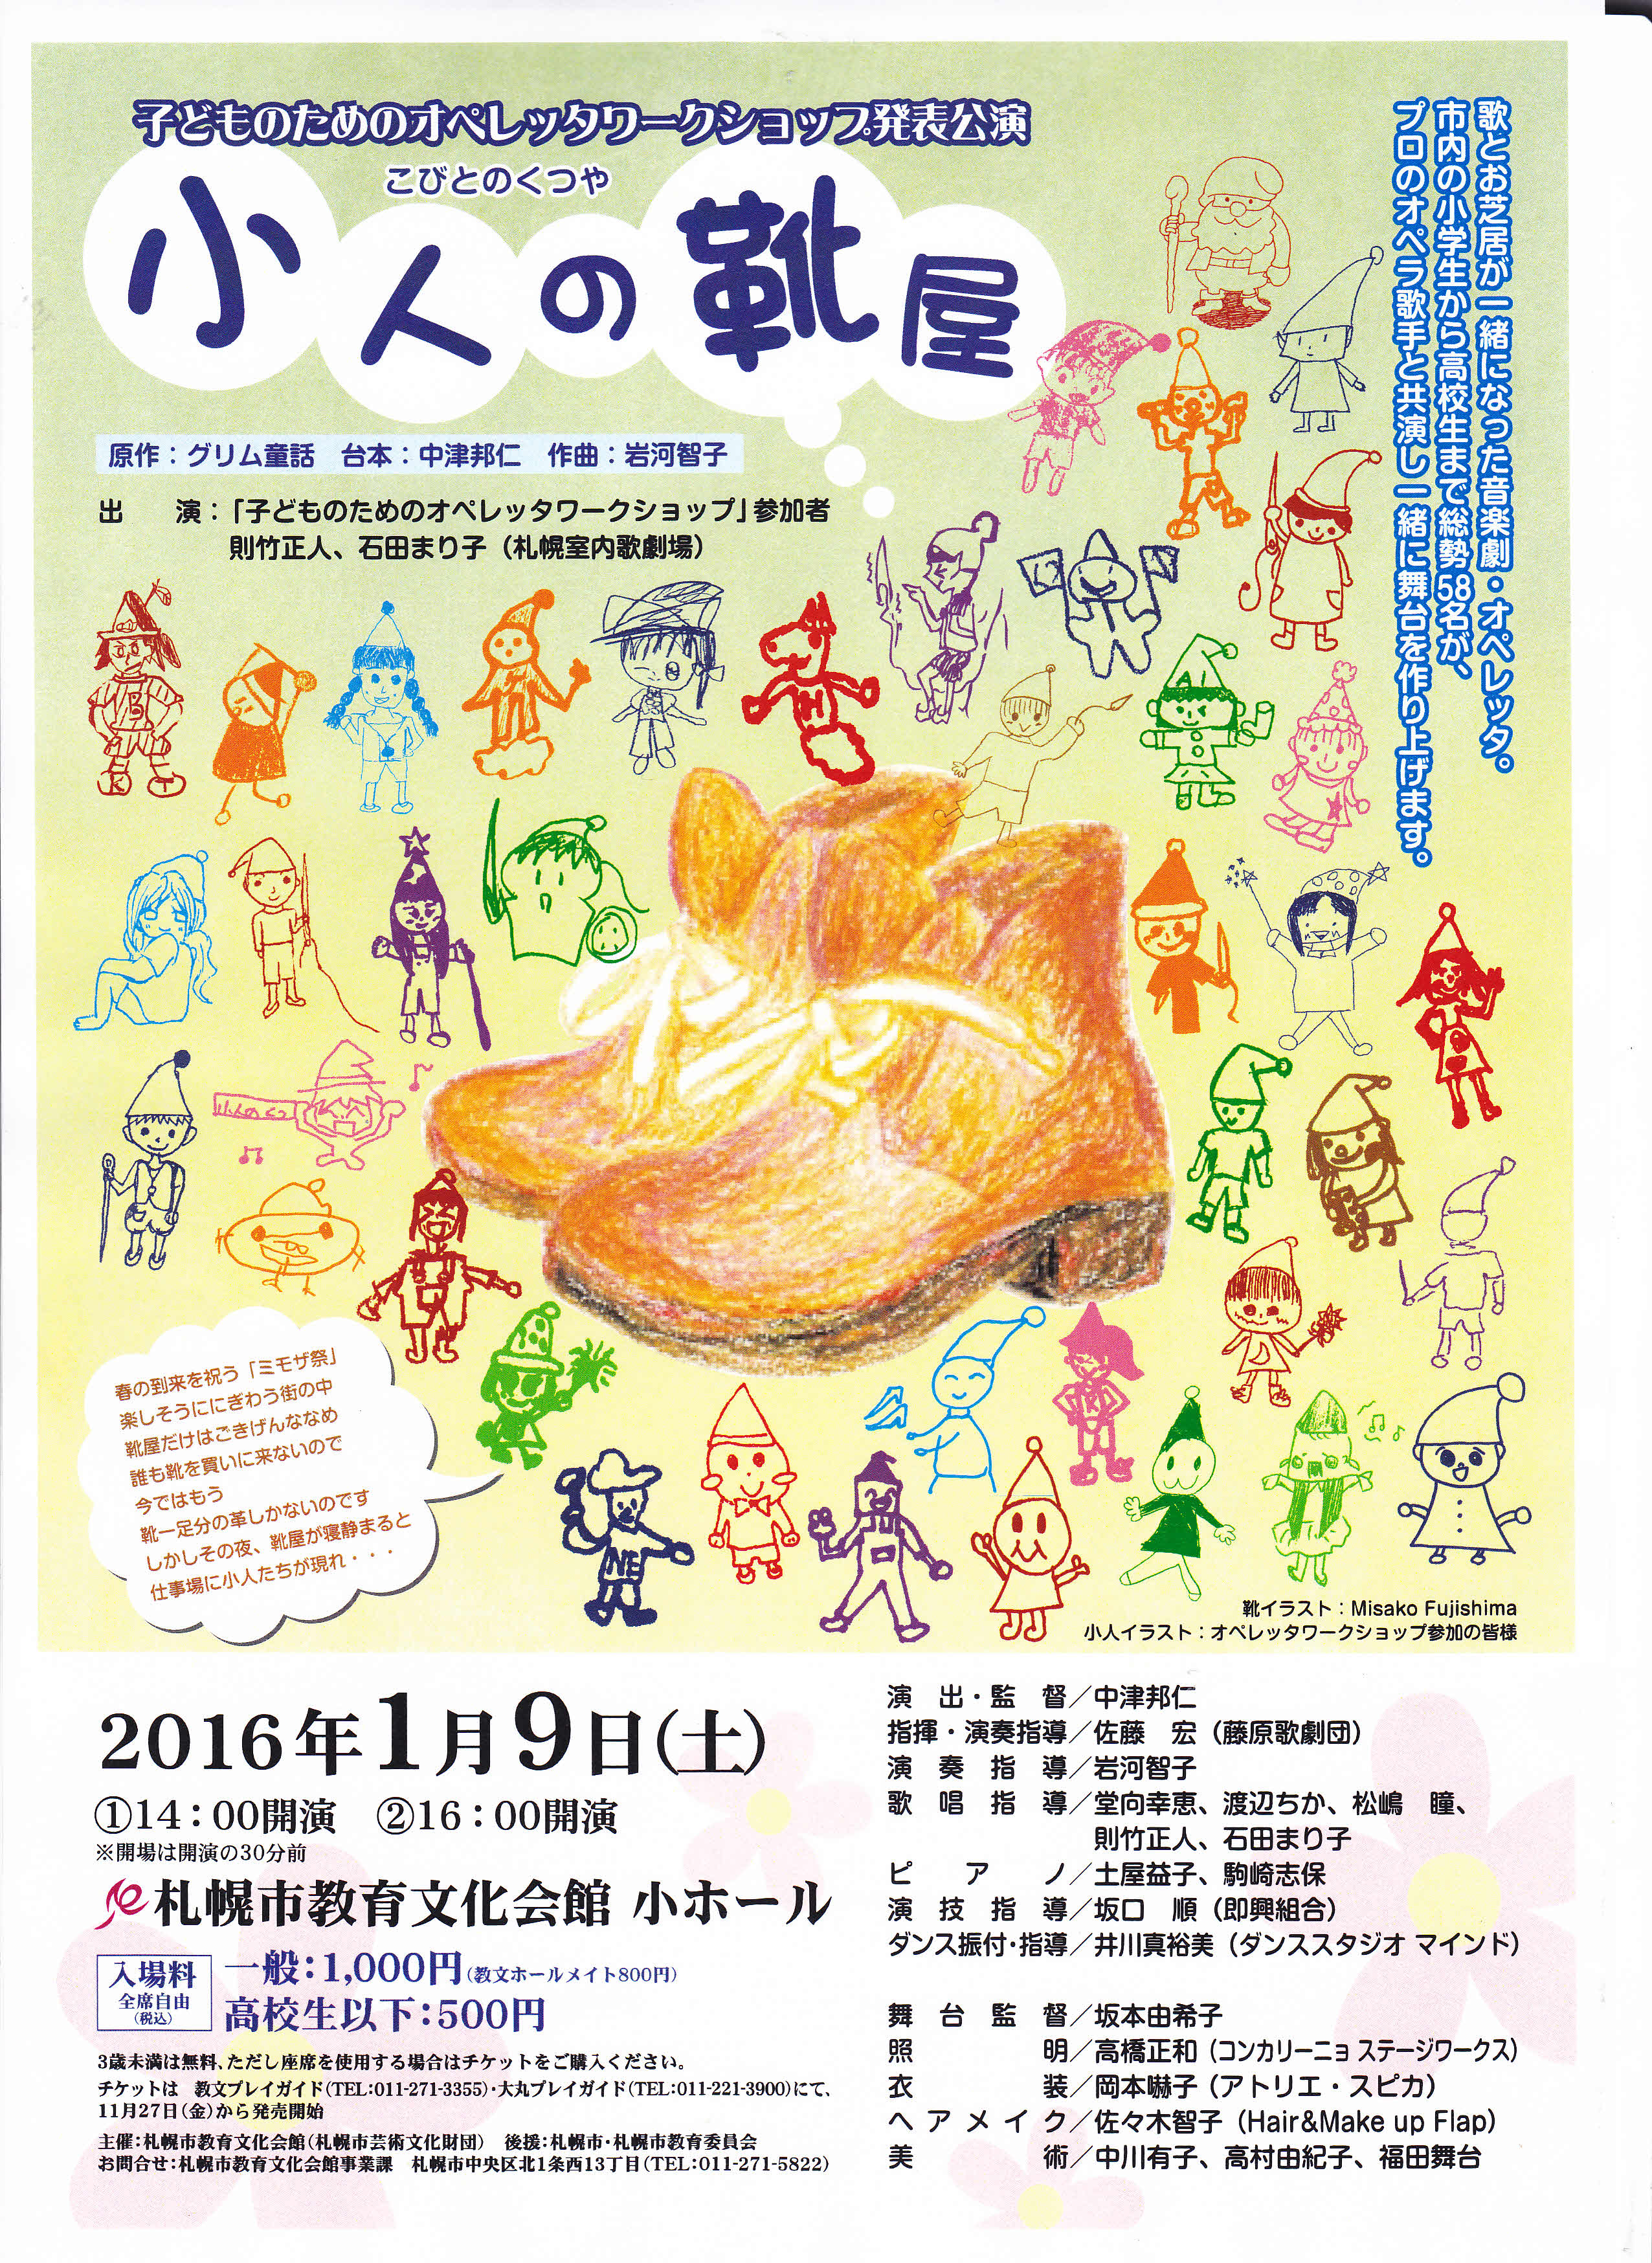 子どものためのオペレッタワークショップ発表公演 小人の靴屋 Npo法人 札幌室内歌劇場